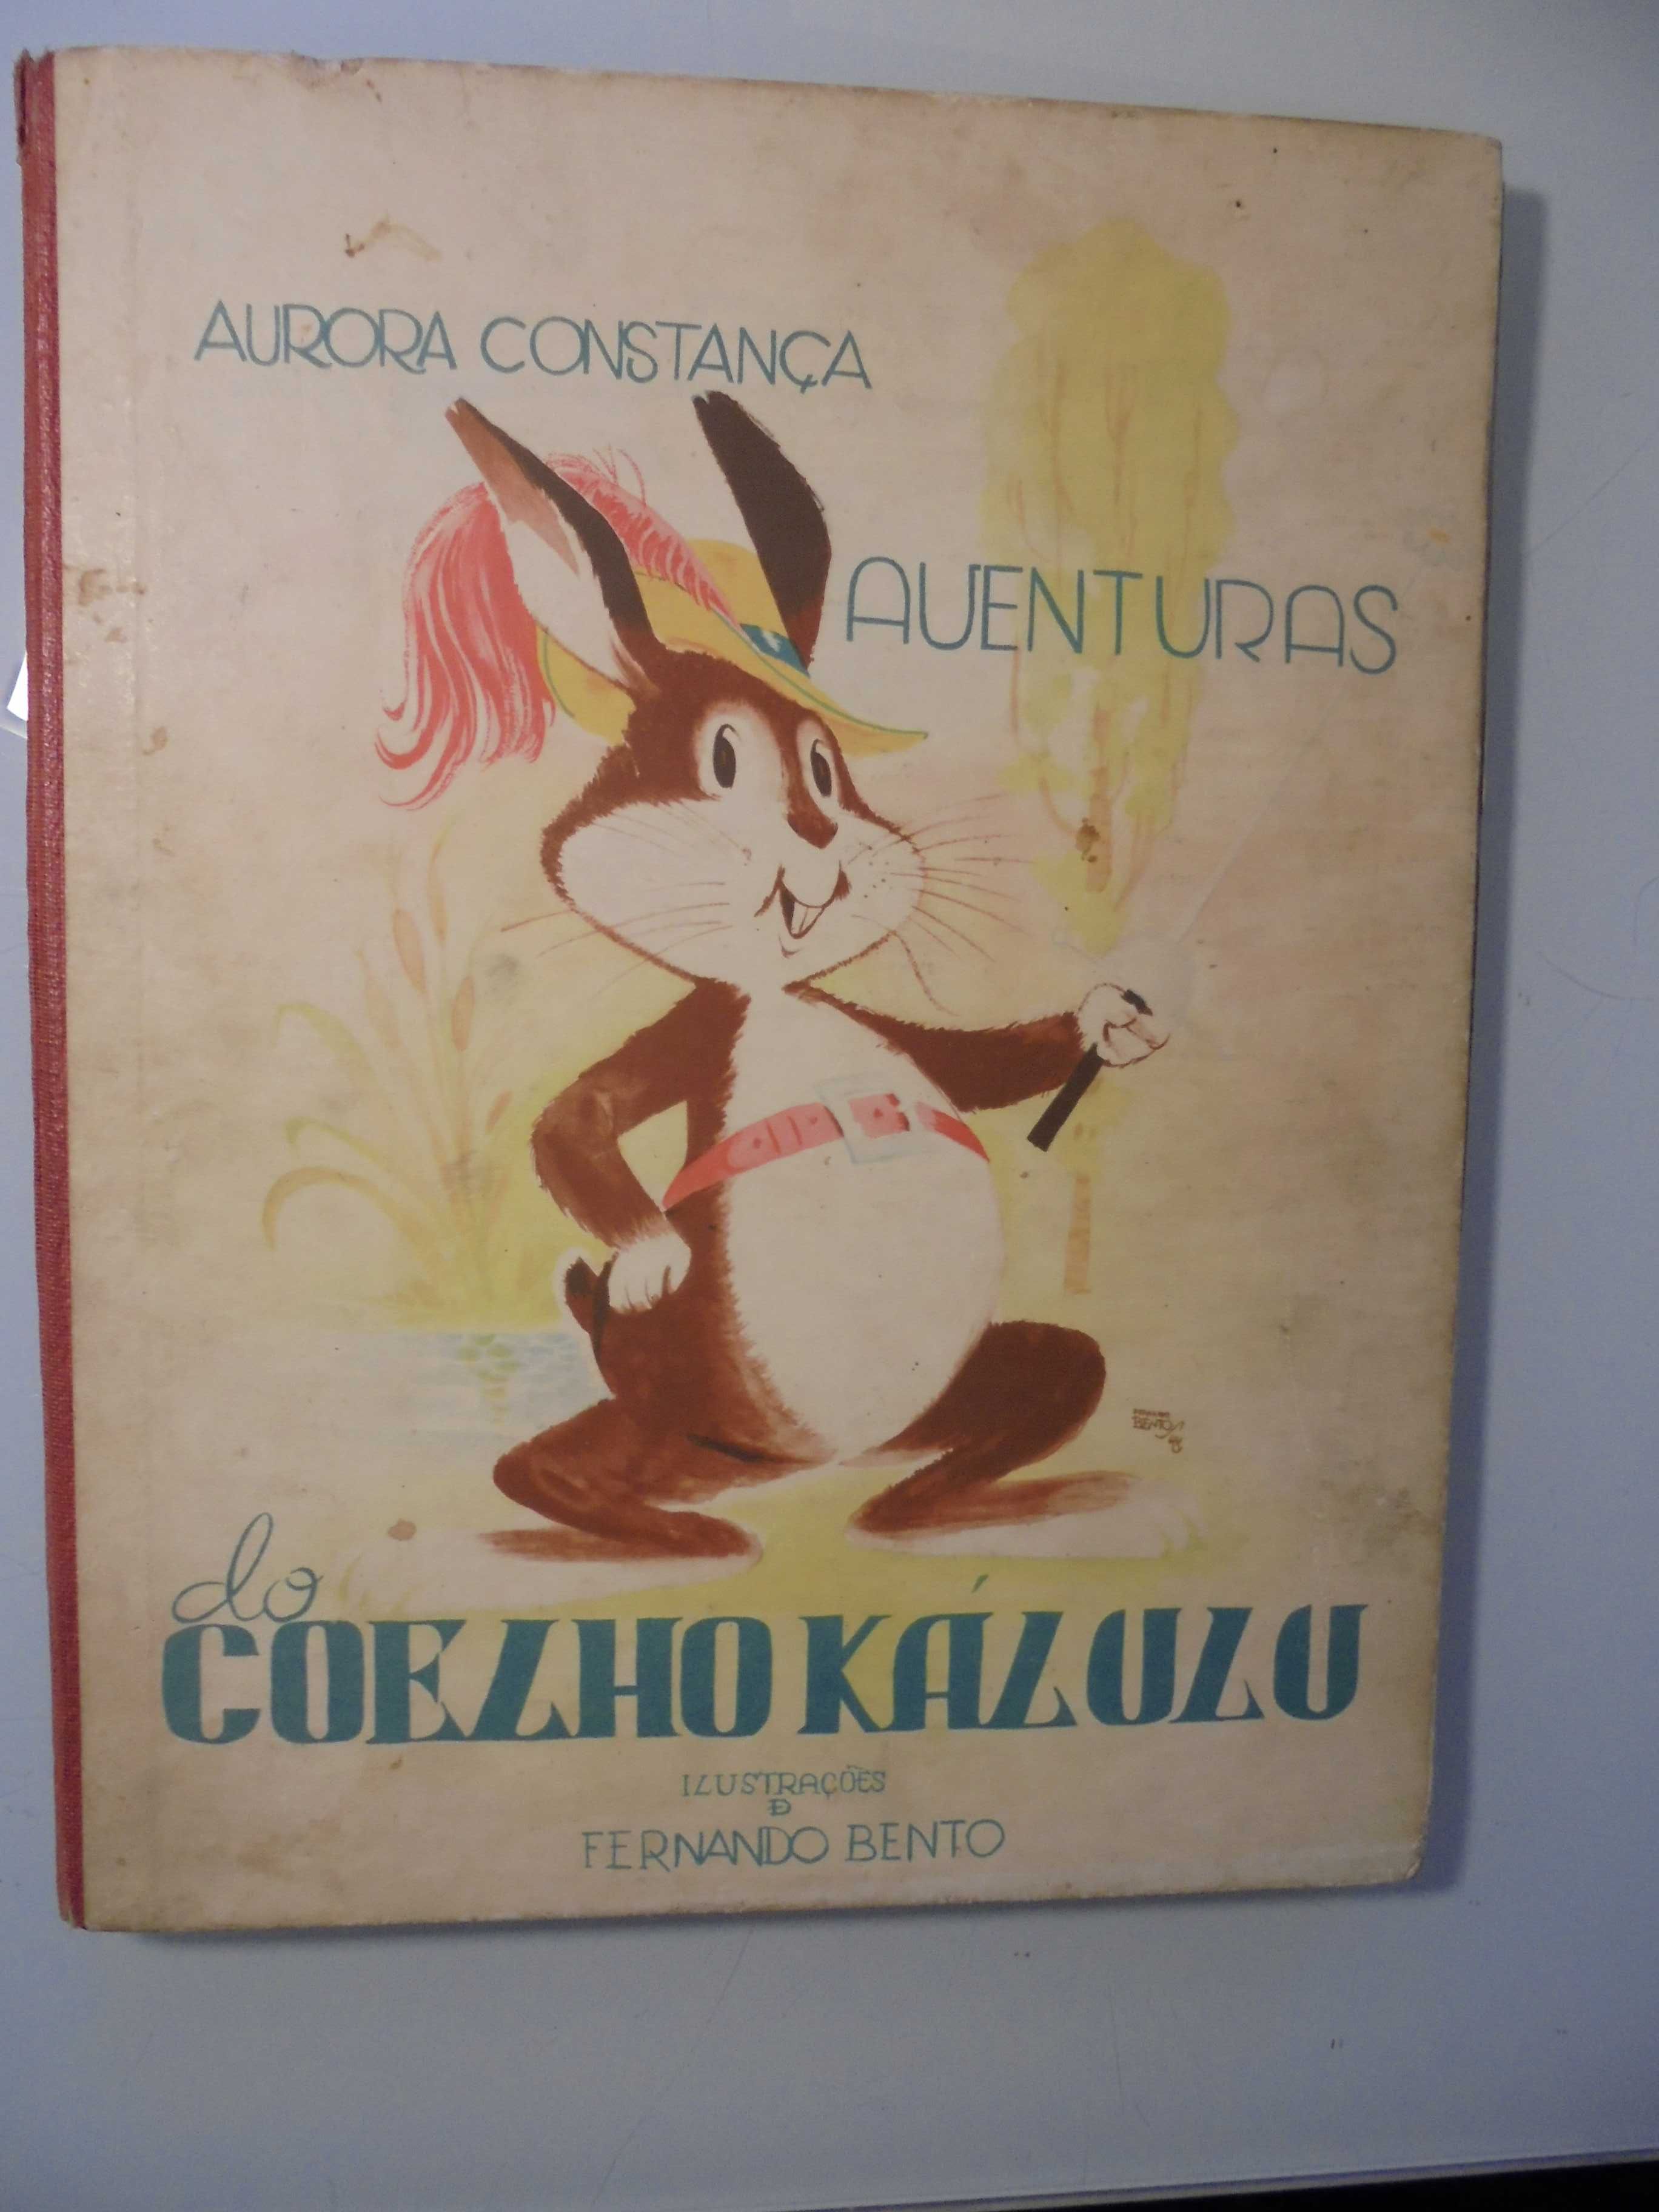 Constança (Aurora);Aventuras do Coelho Kálazu,Ilus Fernando Bento